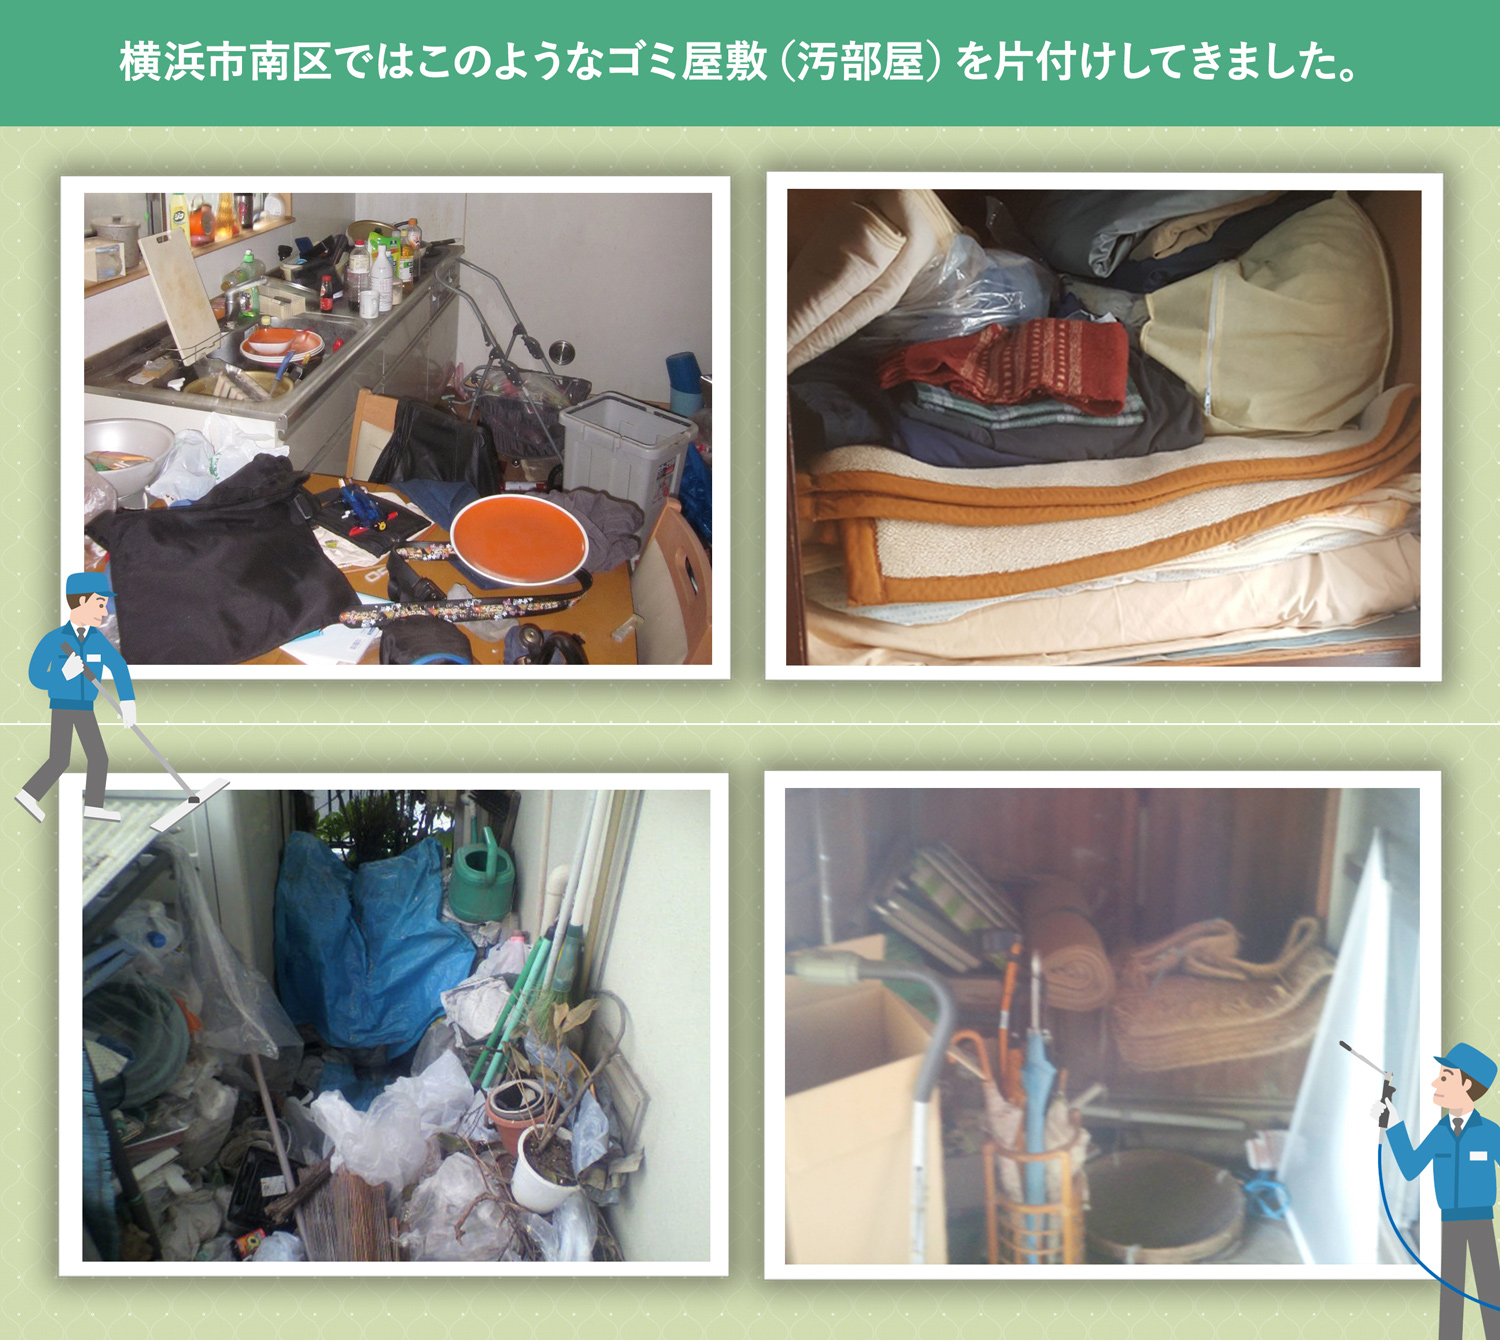 横浜市南区で行ったで行ったごみ屋敷・汚部屋の片付けの一例